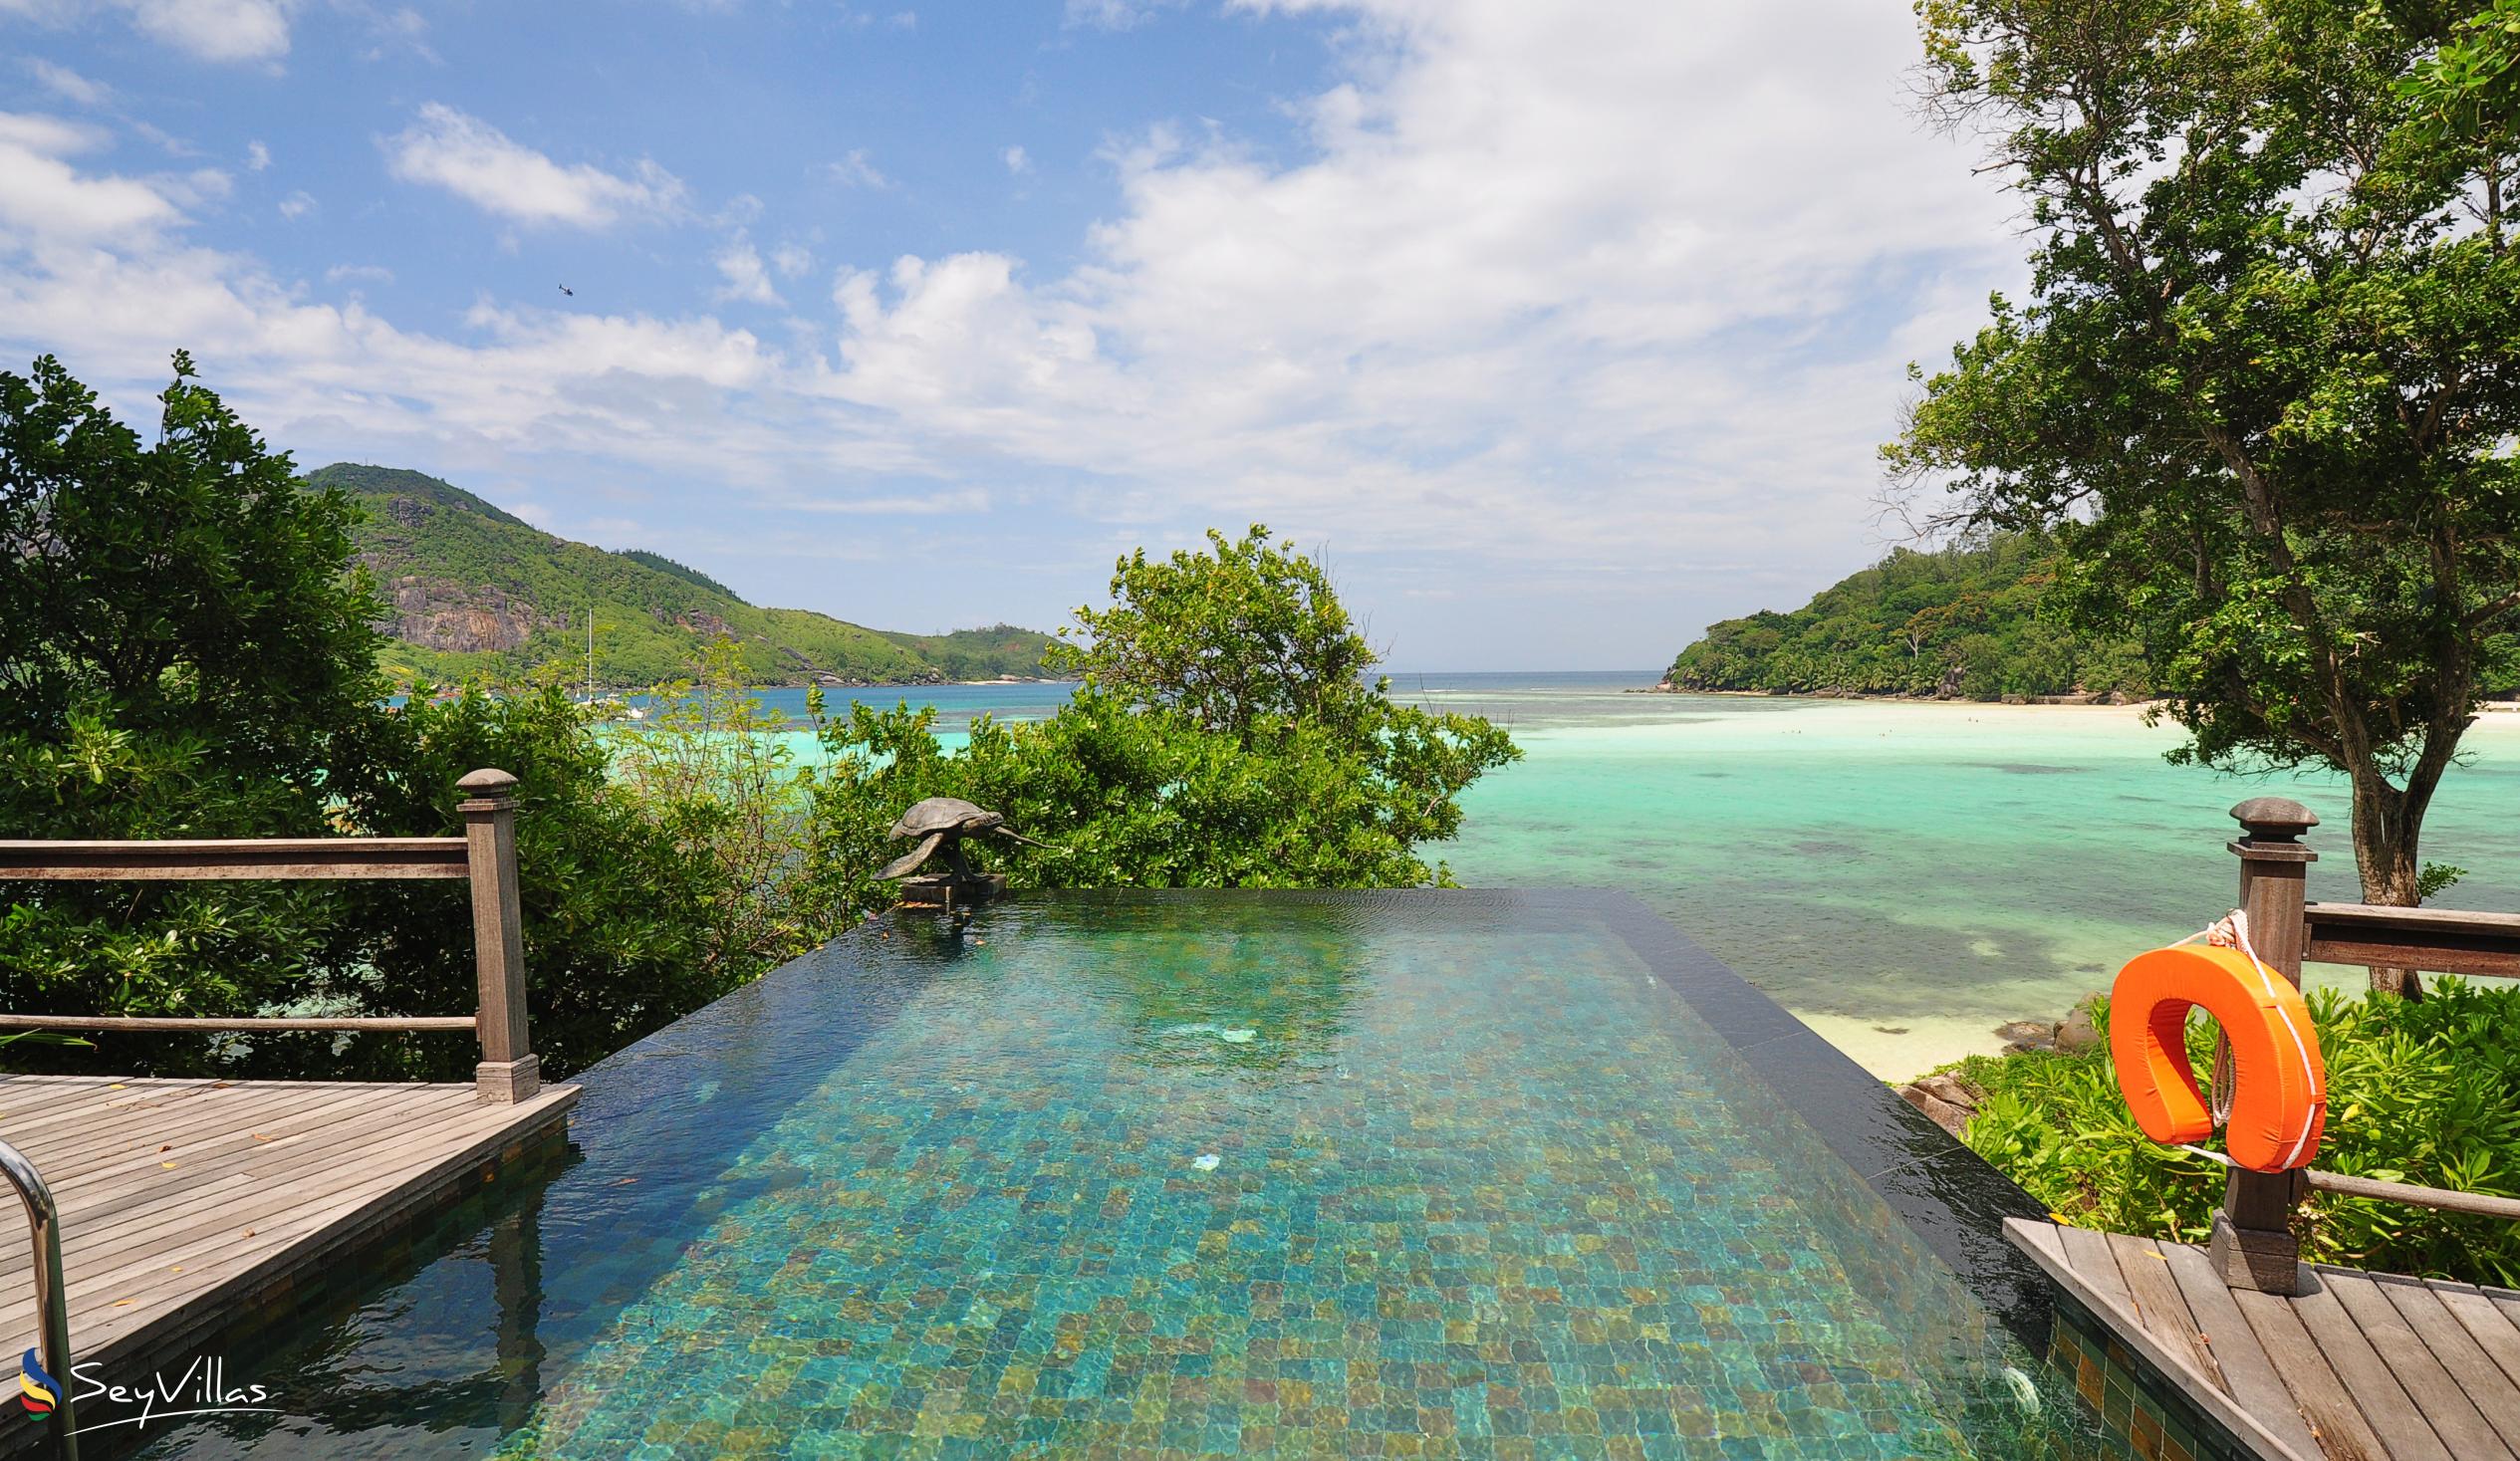 Foto 23: JA Enchanted Island Resort - Innenbereich - Round Island (Seychellen)